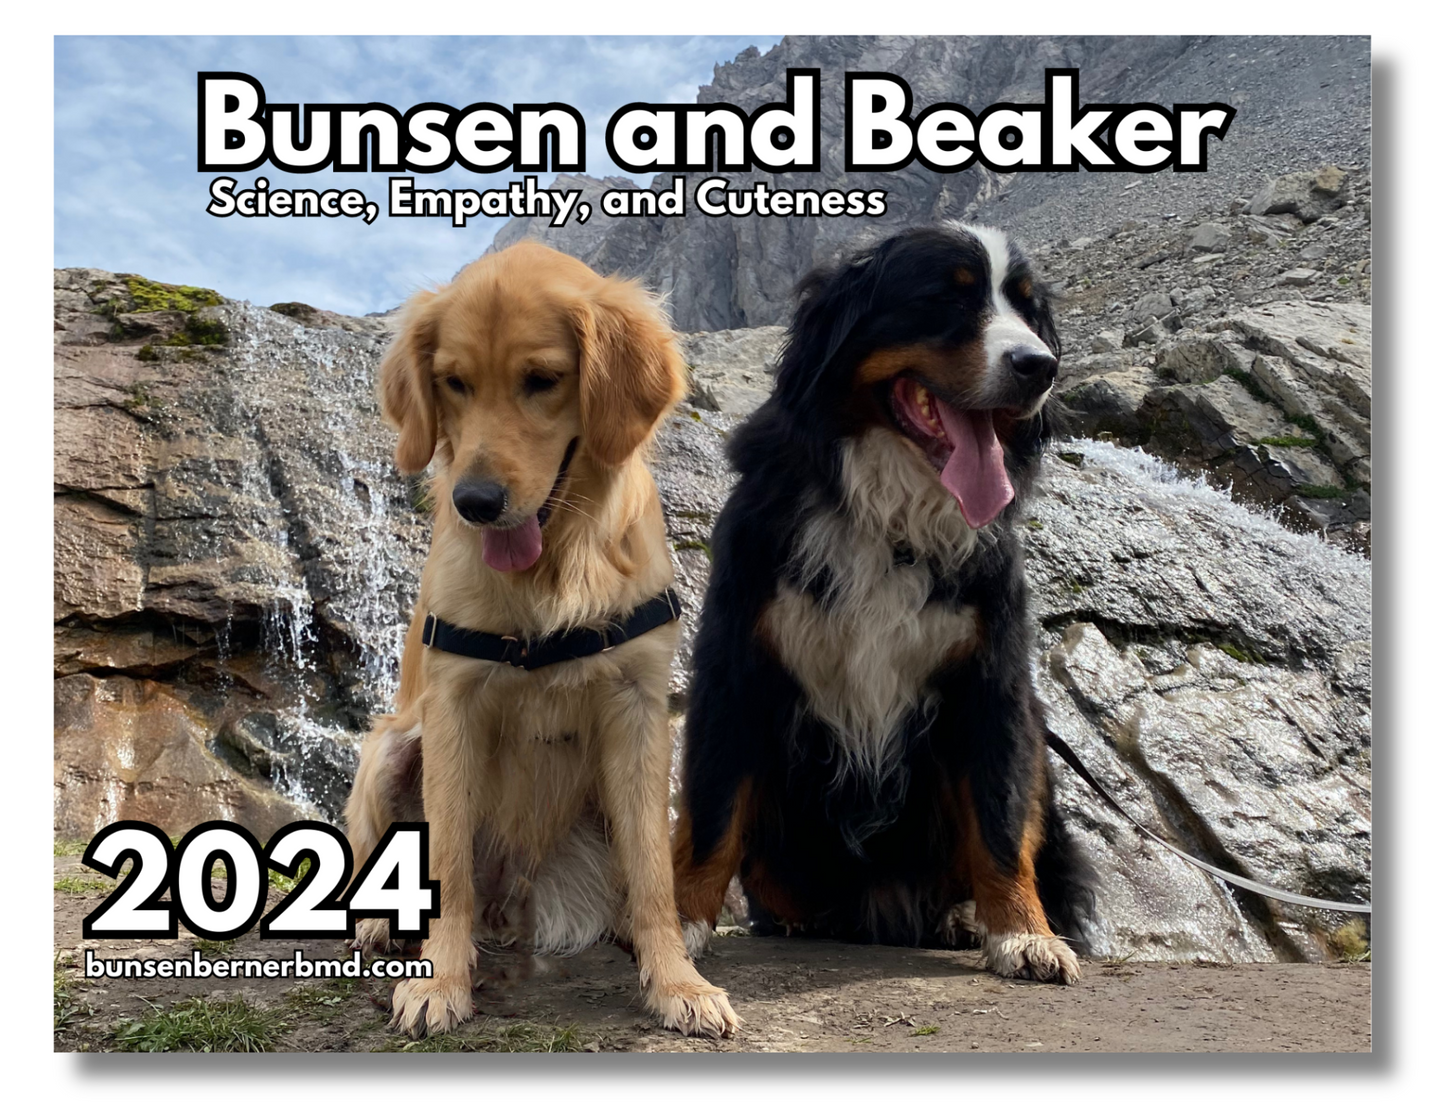 The 2024 Bunsen and Beaker Calendar!